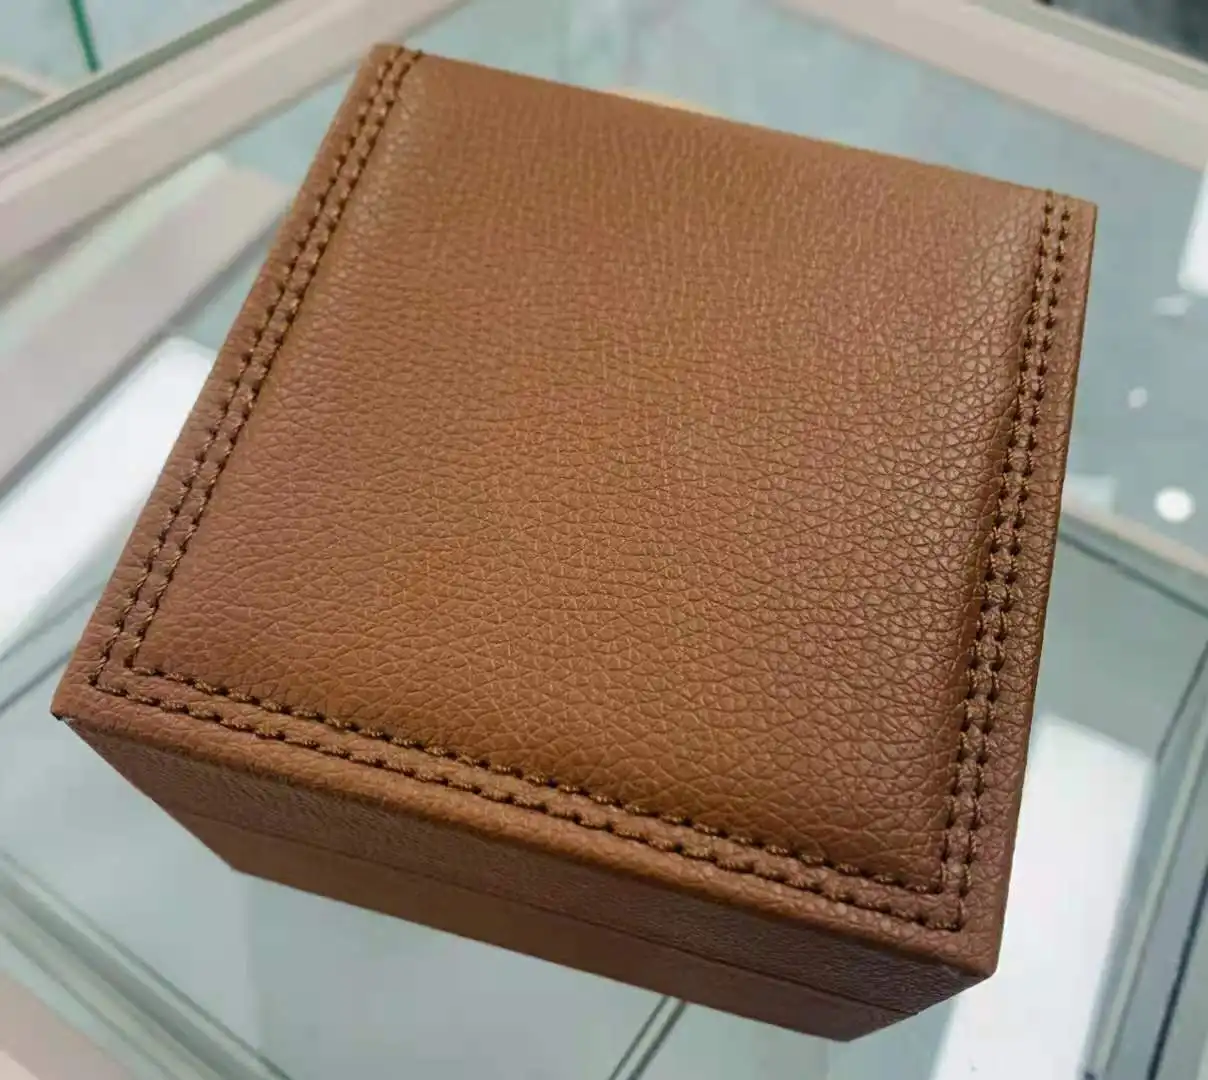 brown genuine leather box watch gentleman watches present pack elegant Wrist Watch Box